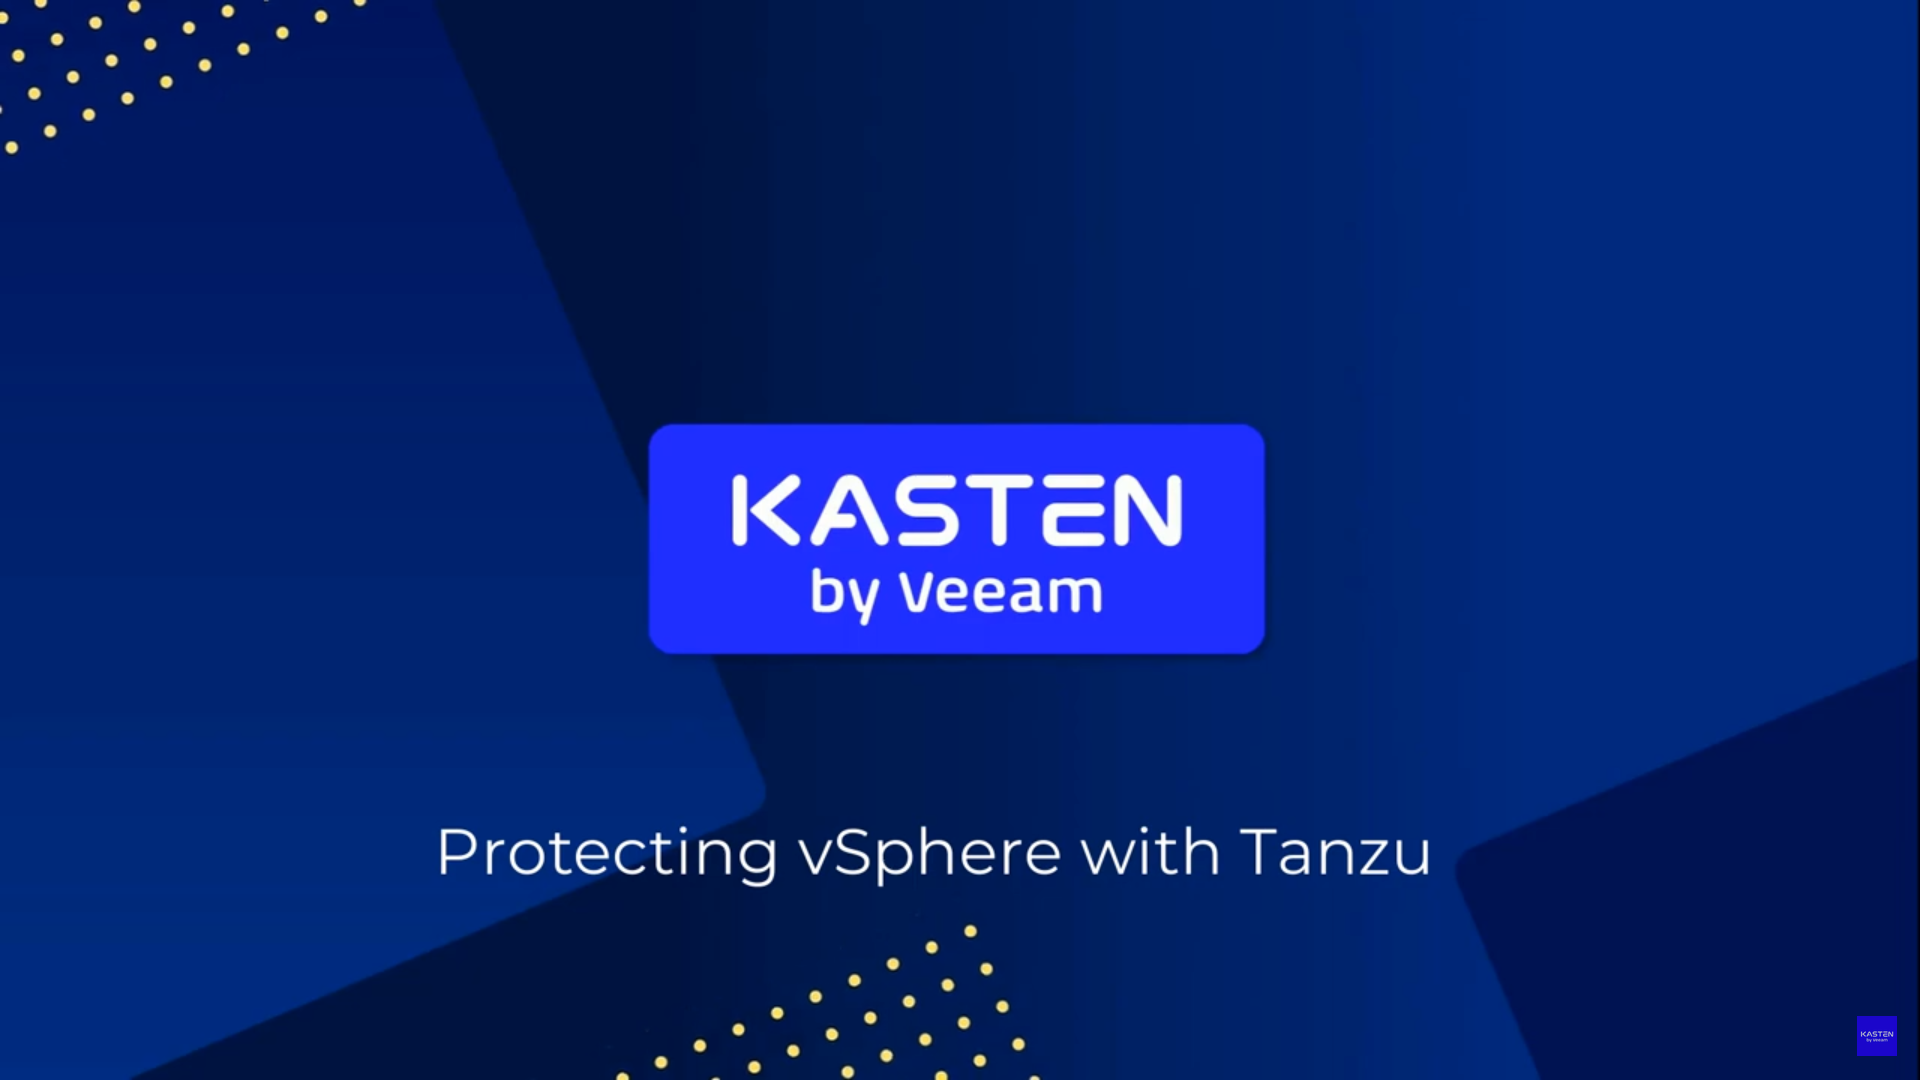 Demo Kasten K10 for vSphere with Tanzu